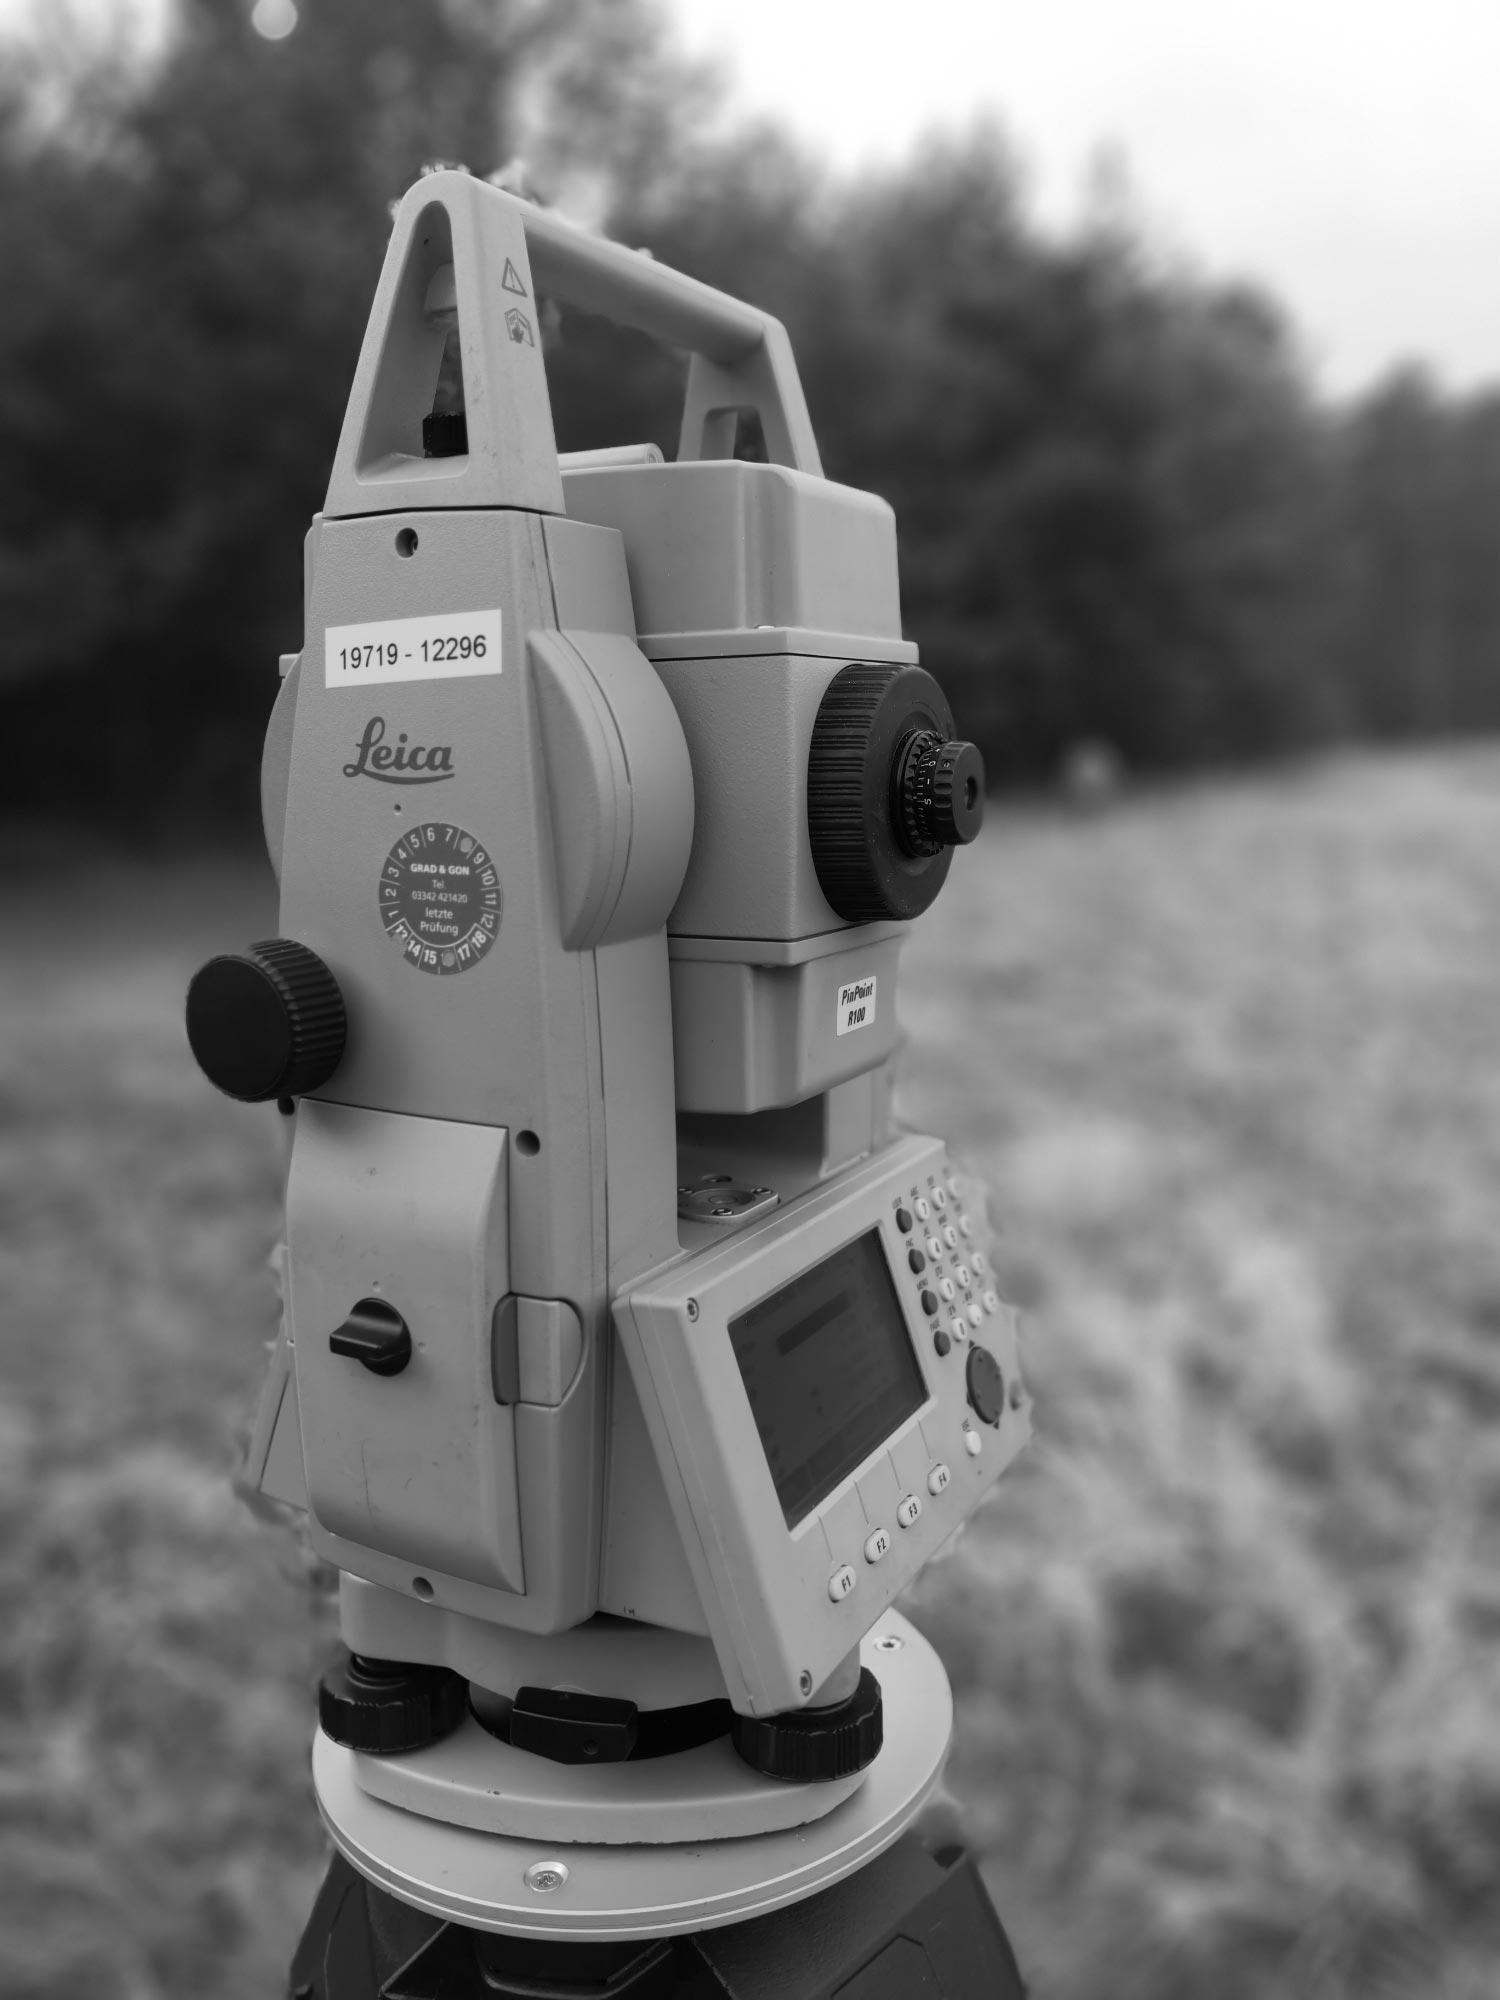 Leica-Messgerät für präzise Sondierung und Flächenvermessung